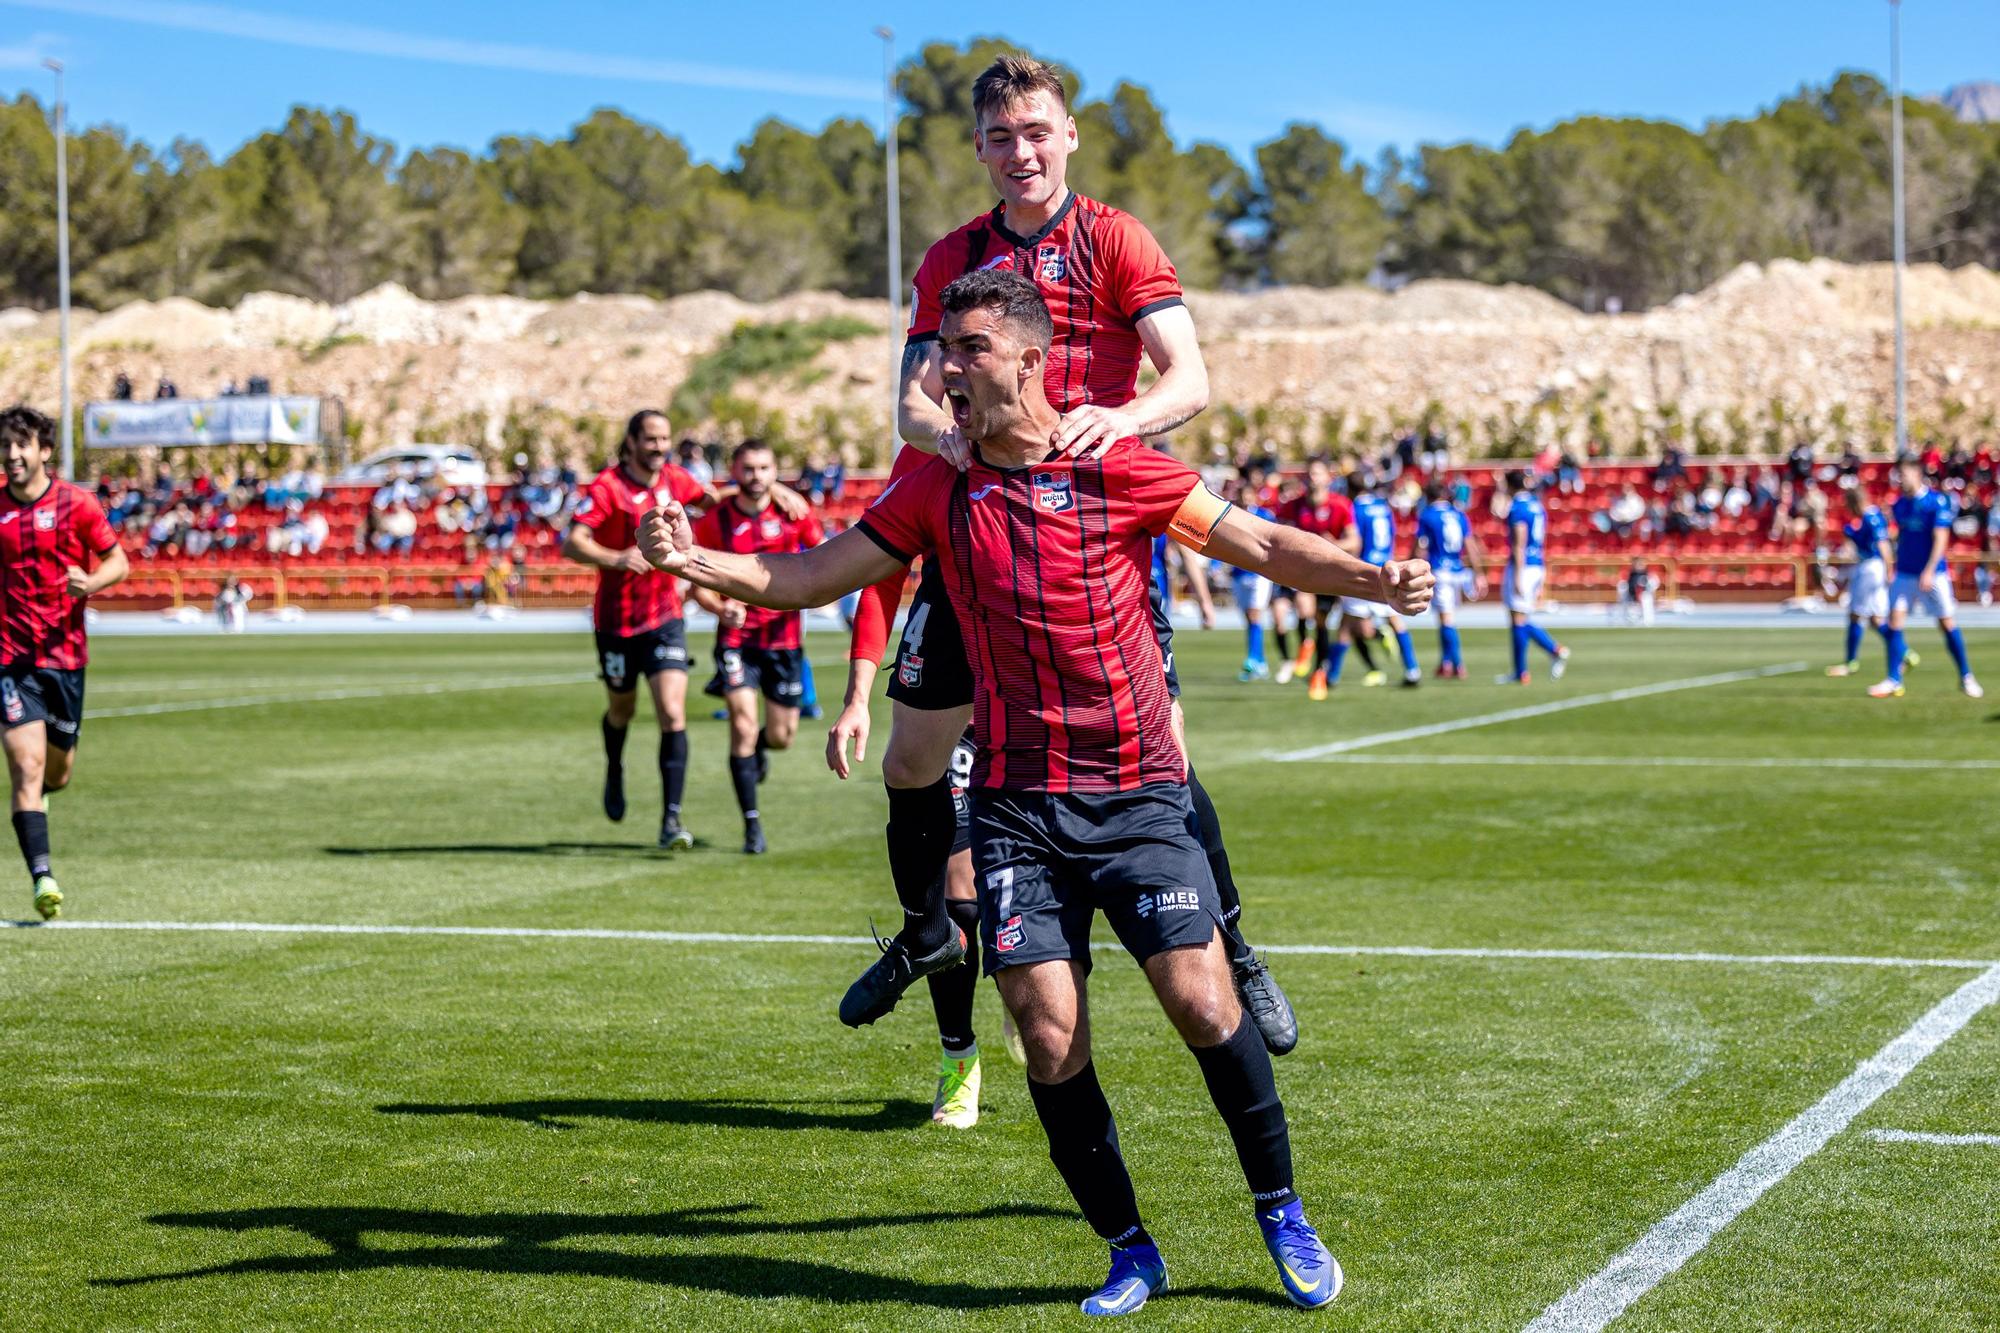 La Nucía gana por 2 - 0 al Melilla este domingo y se mantiene líder en la clasificación.